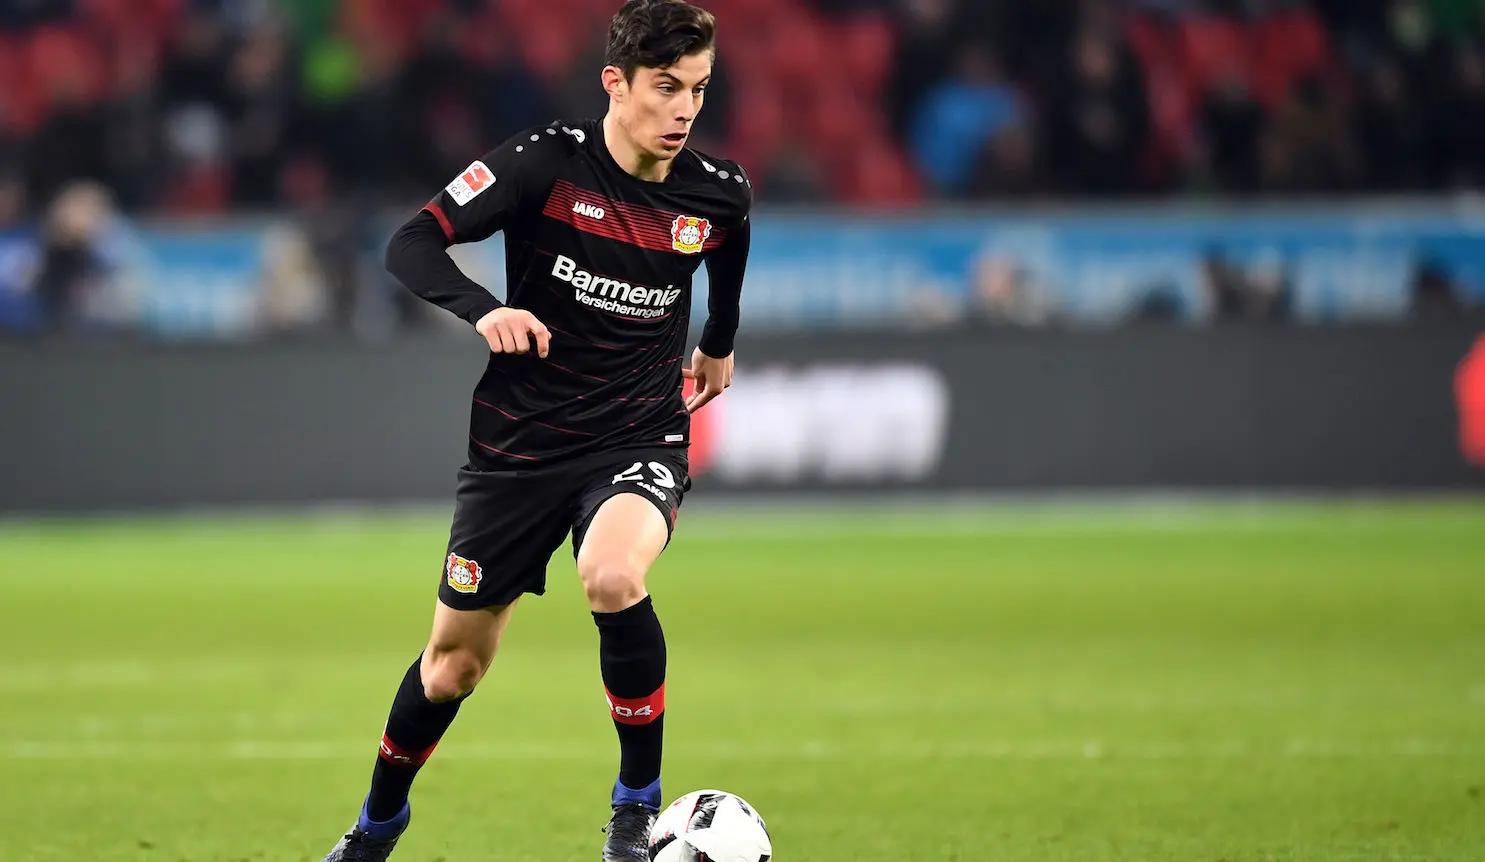 Un joueur du Bayer Leverkusen va louper le match contre l’Atlético à cause de ses examens scolaires